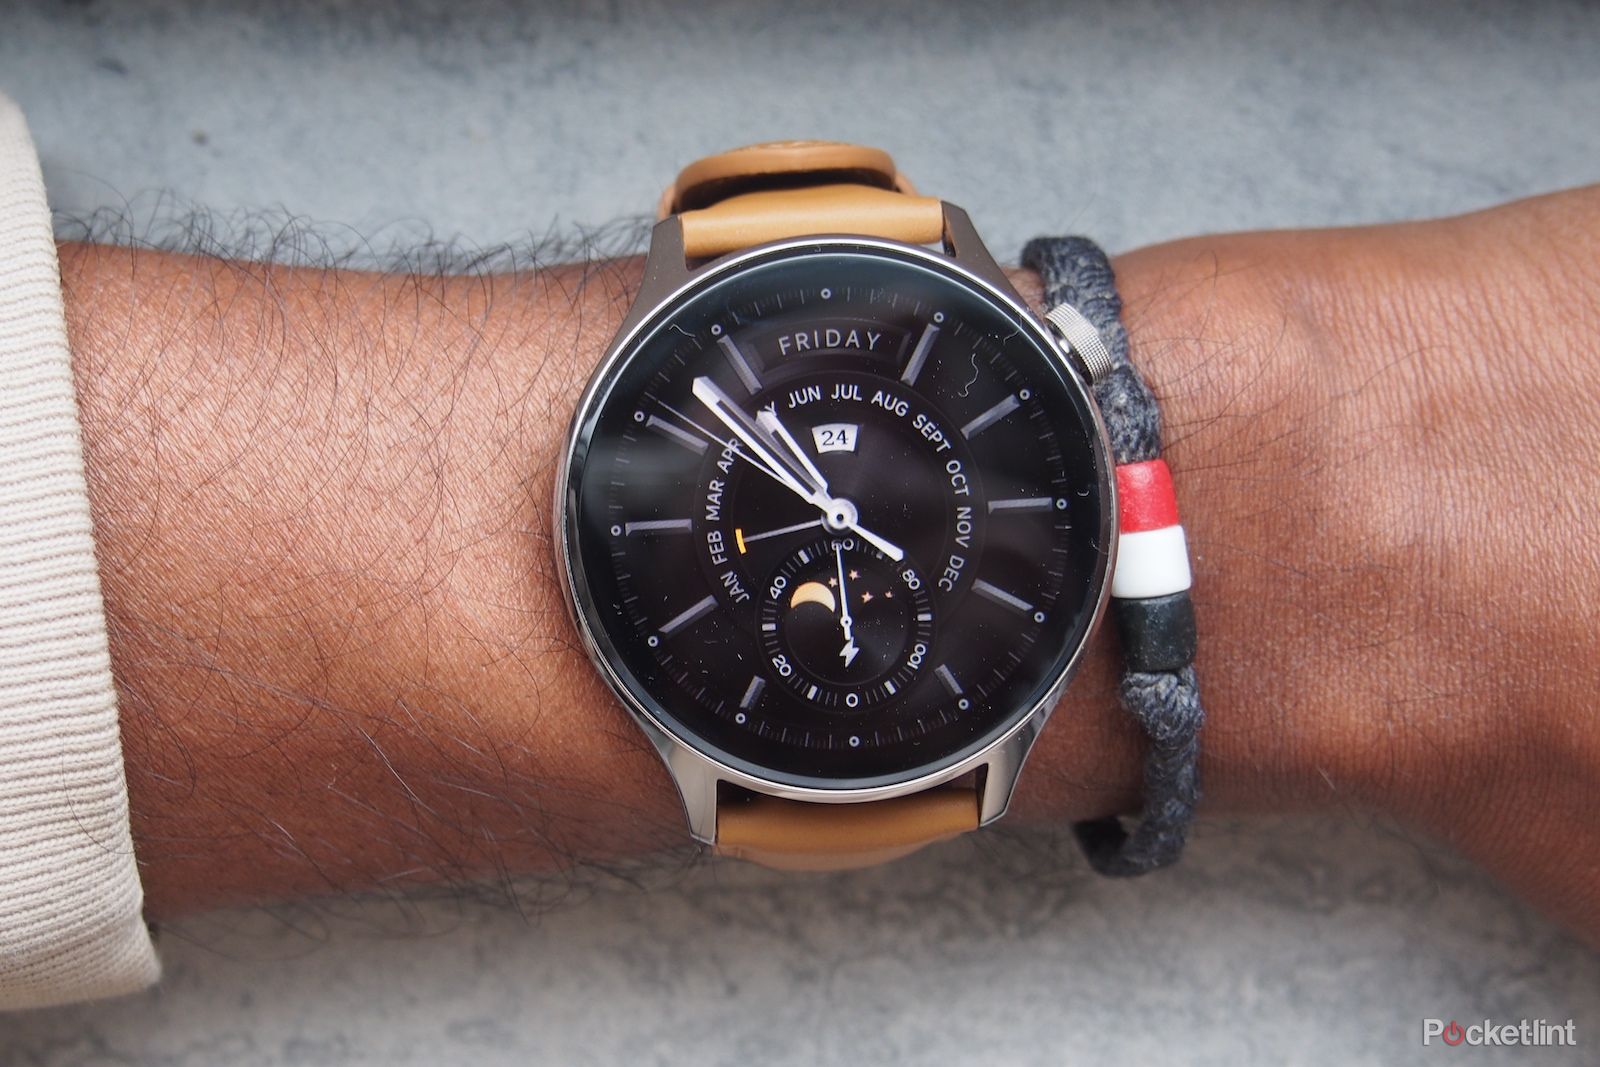 Xiaomi Watch S1 Pro review